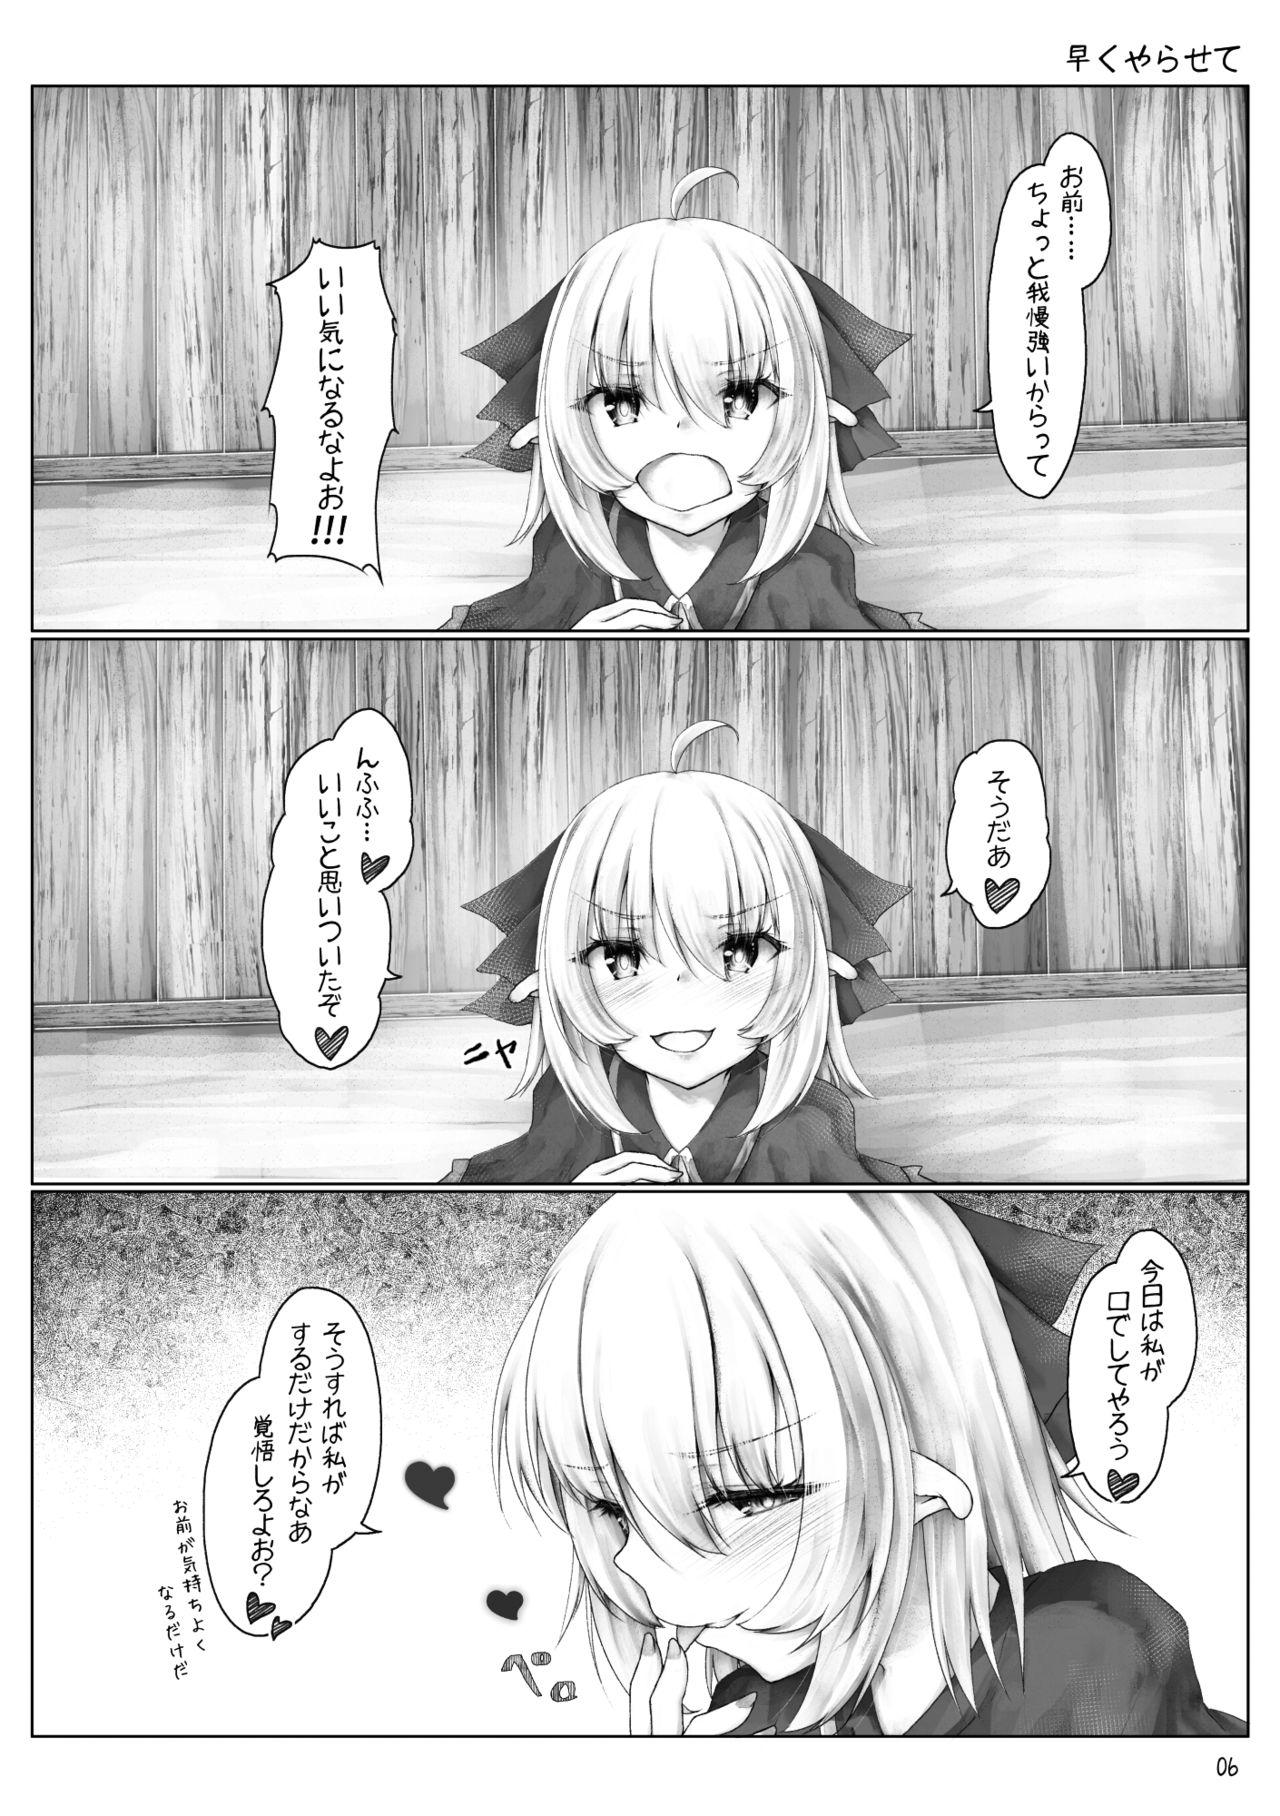 Str8 Elf wa Ecchi na Koto ga Tokui? - Original Rub - Page 8